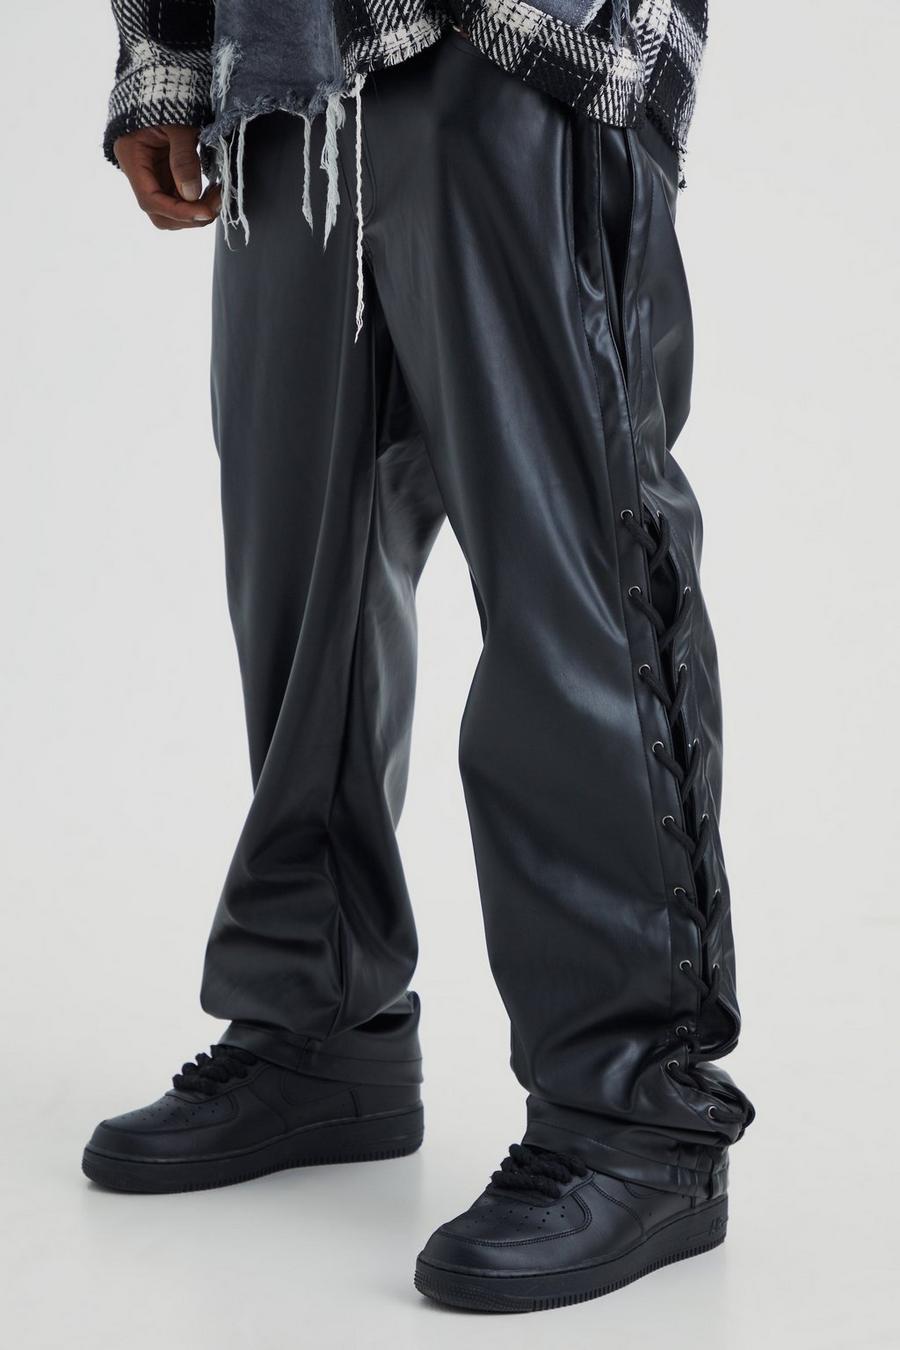 Pantalón ajustado de encaje con refuerzo de cuero sintético, Black nero